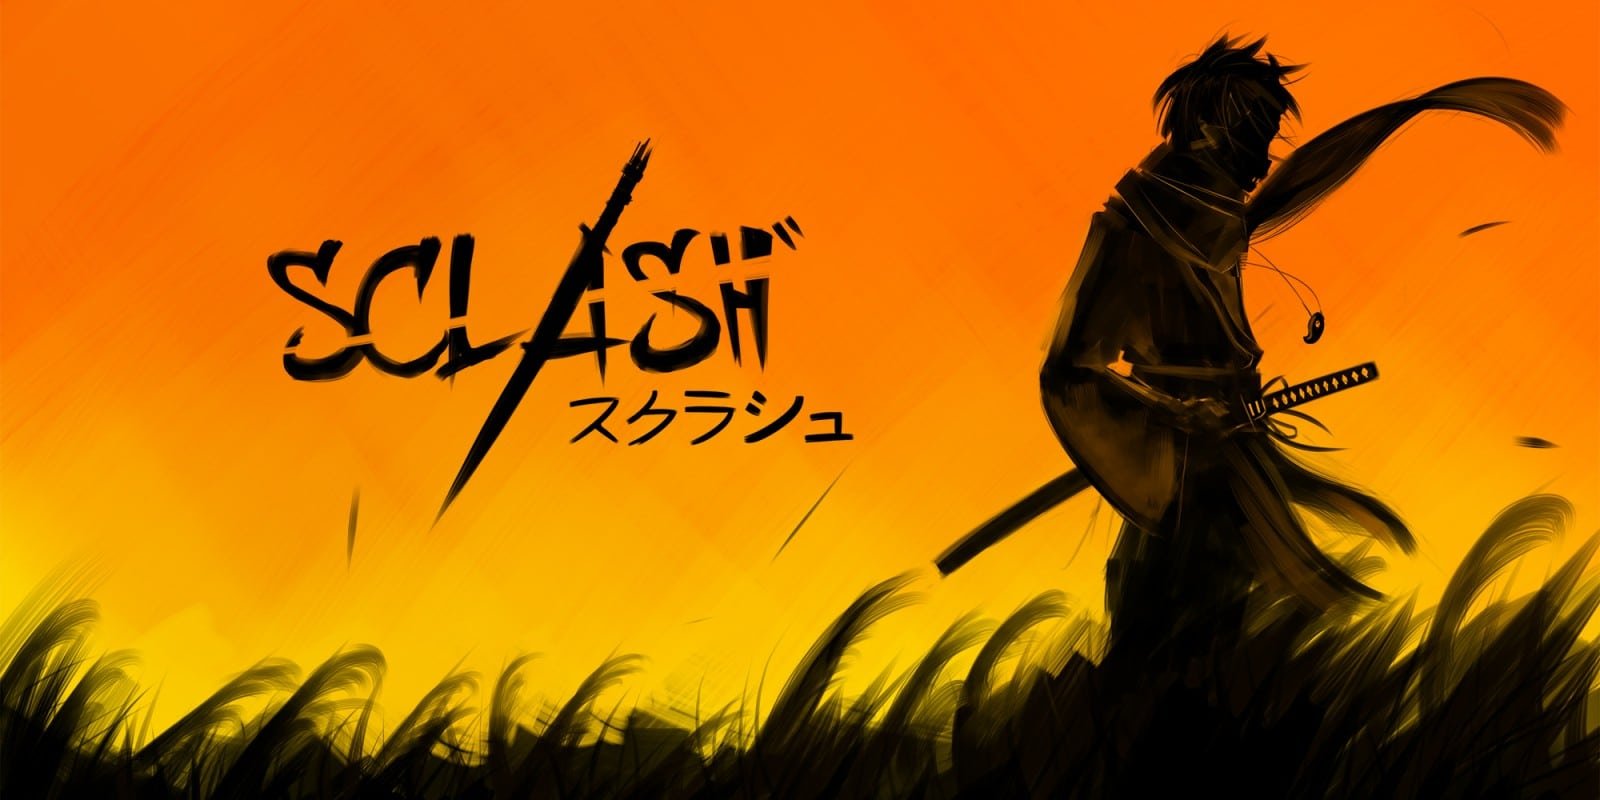 Sclash : Le jeu de combat de samouraï 2D est disponible sur Nintendo Switch